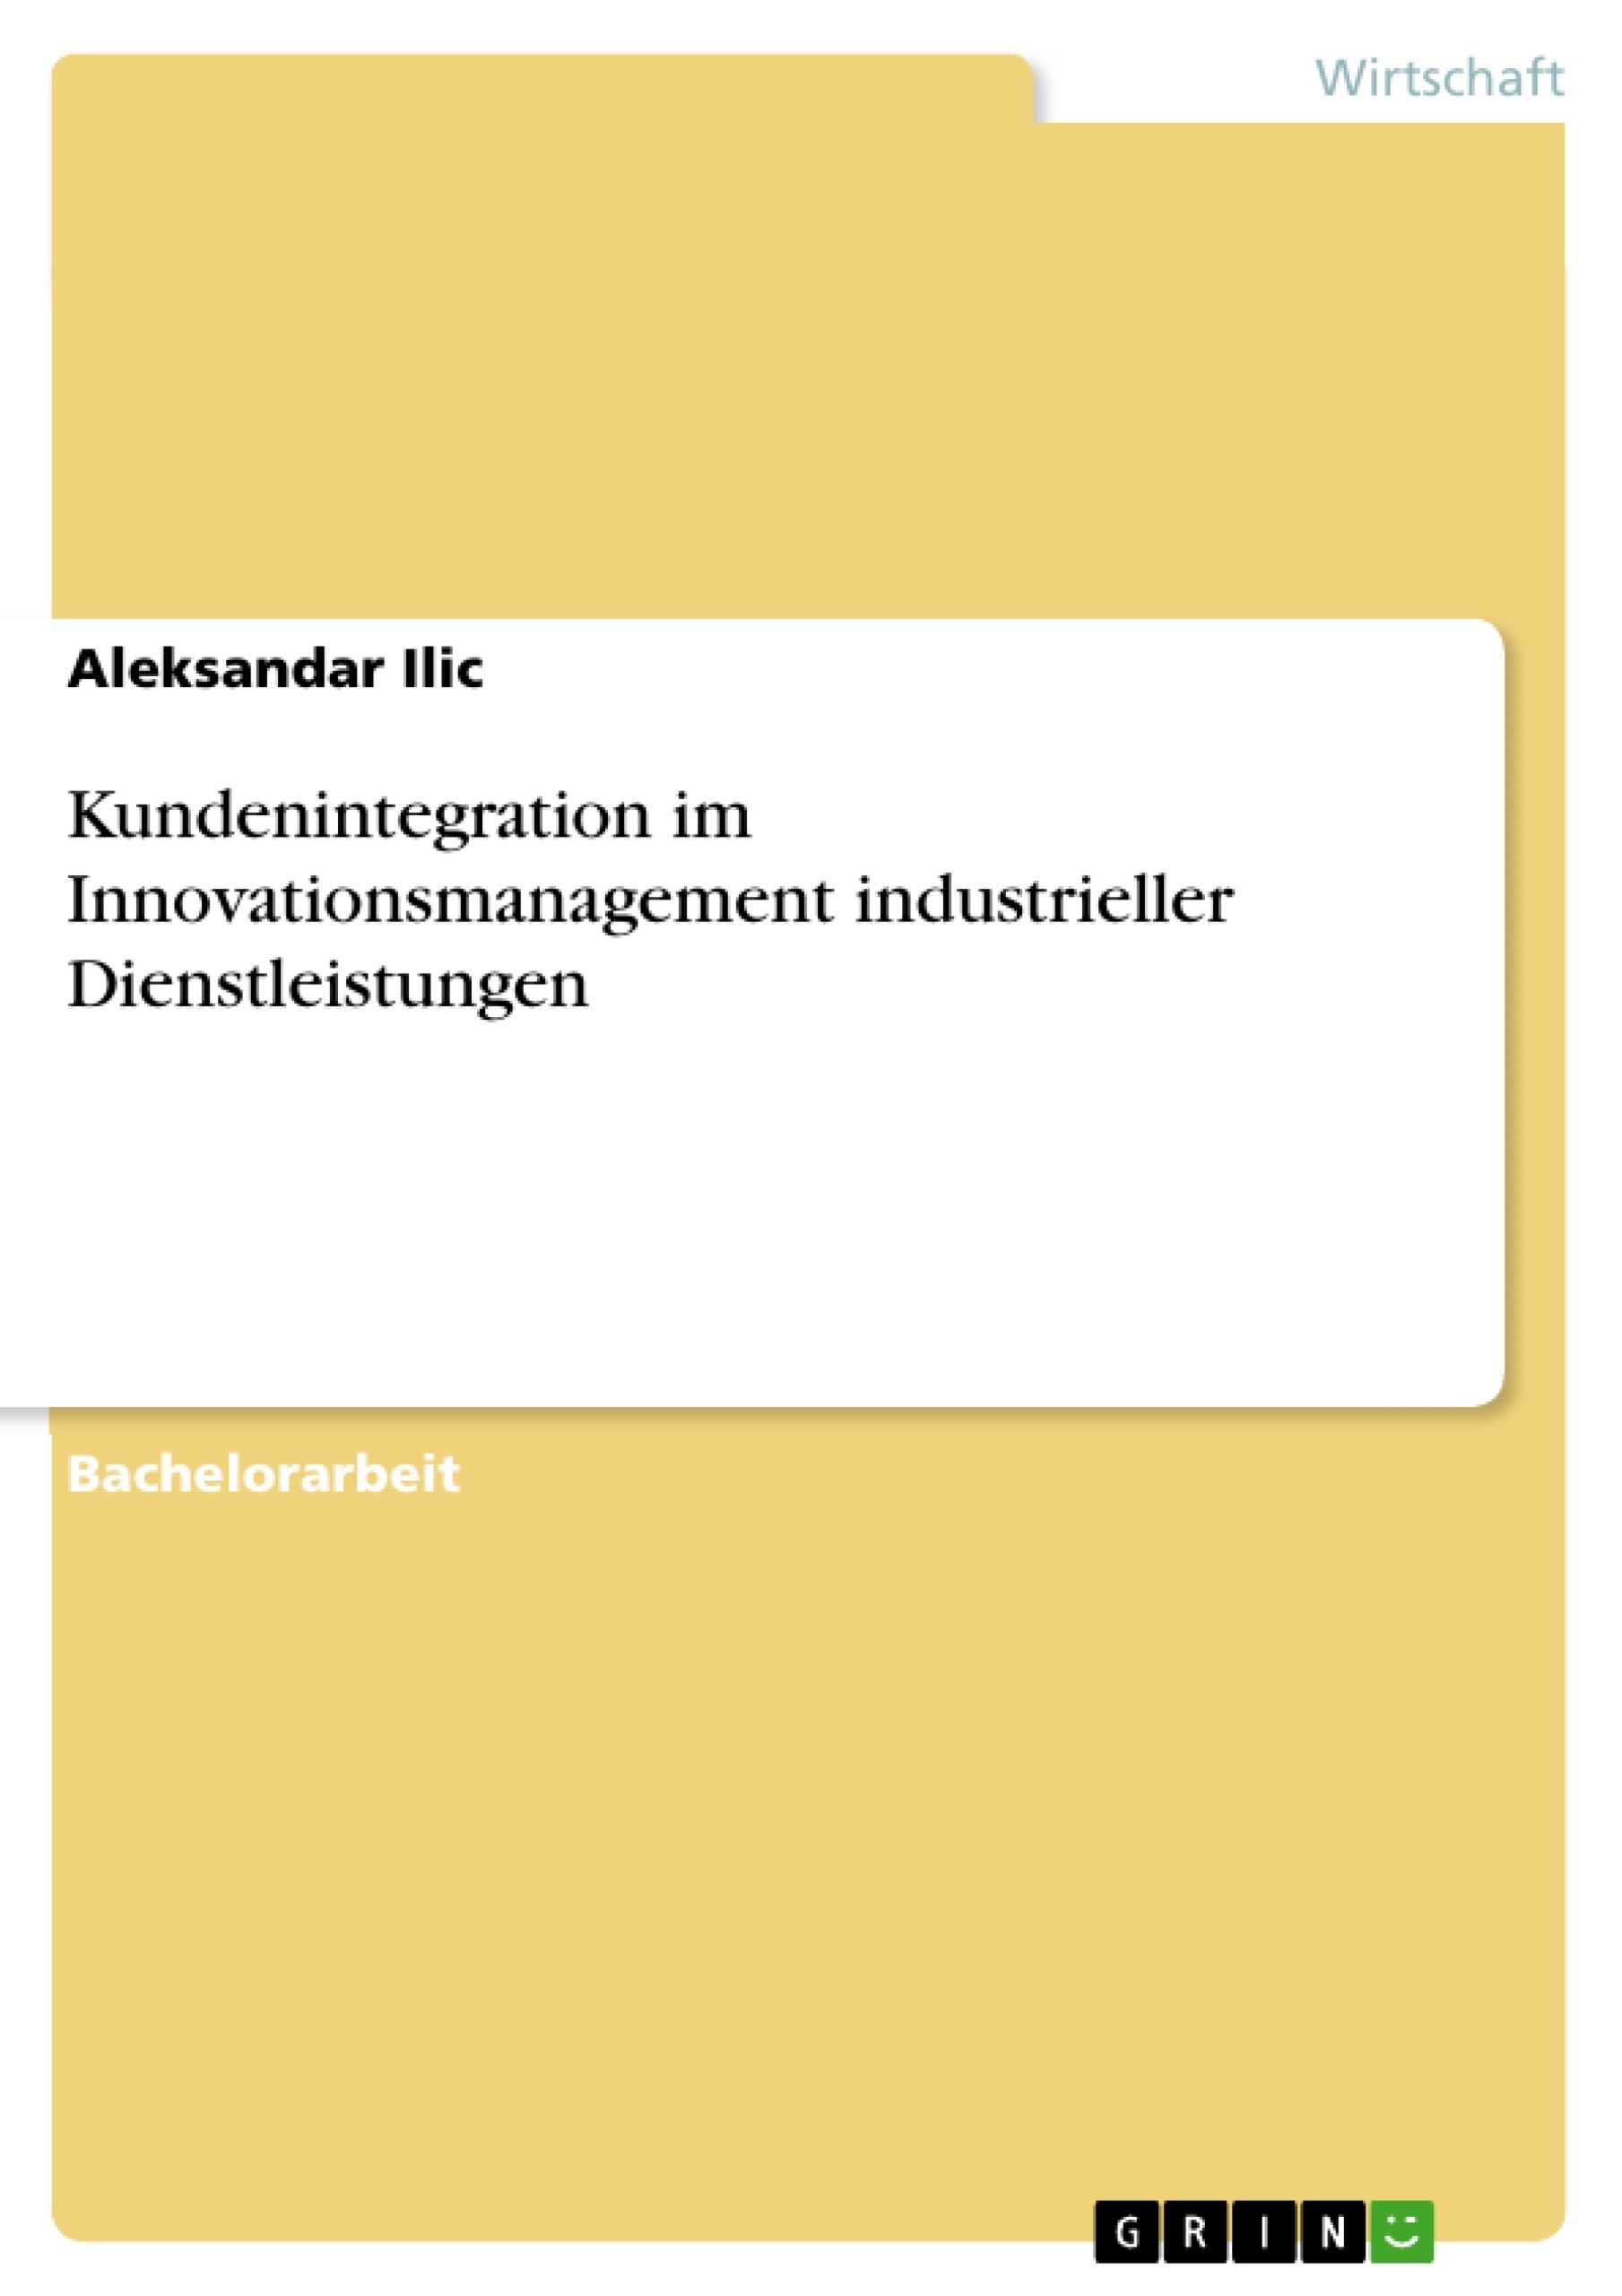 Titre: Kundenintegration im Innovationsmanagement industrieller Dienstleistungen